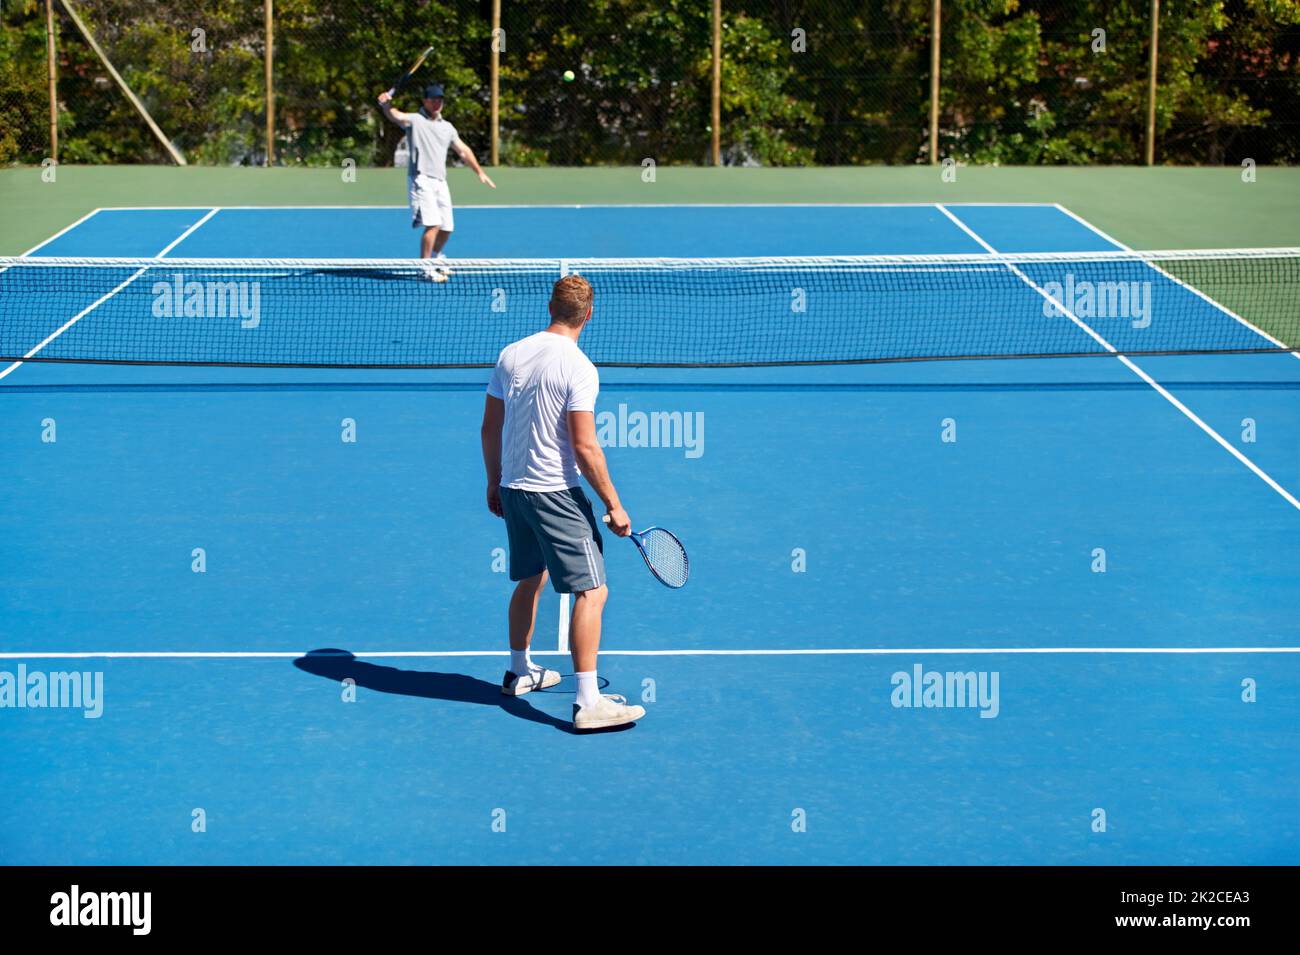 Das Spiel ist an. Menschen, die auf einem Tennisplatz Tennis spielen. Stockfoto